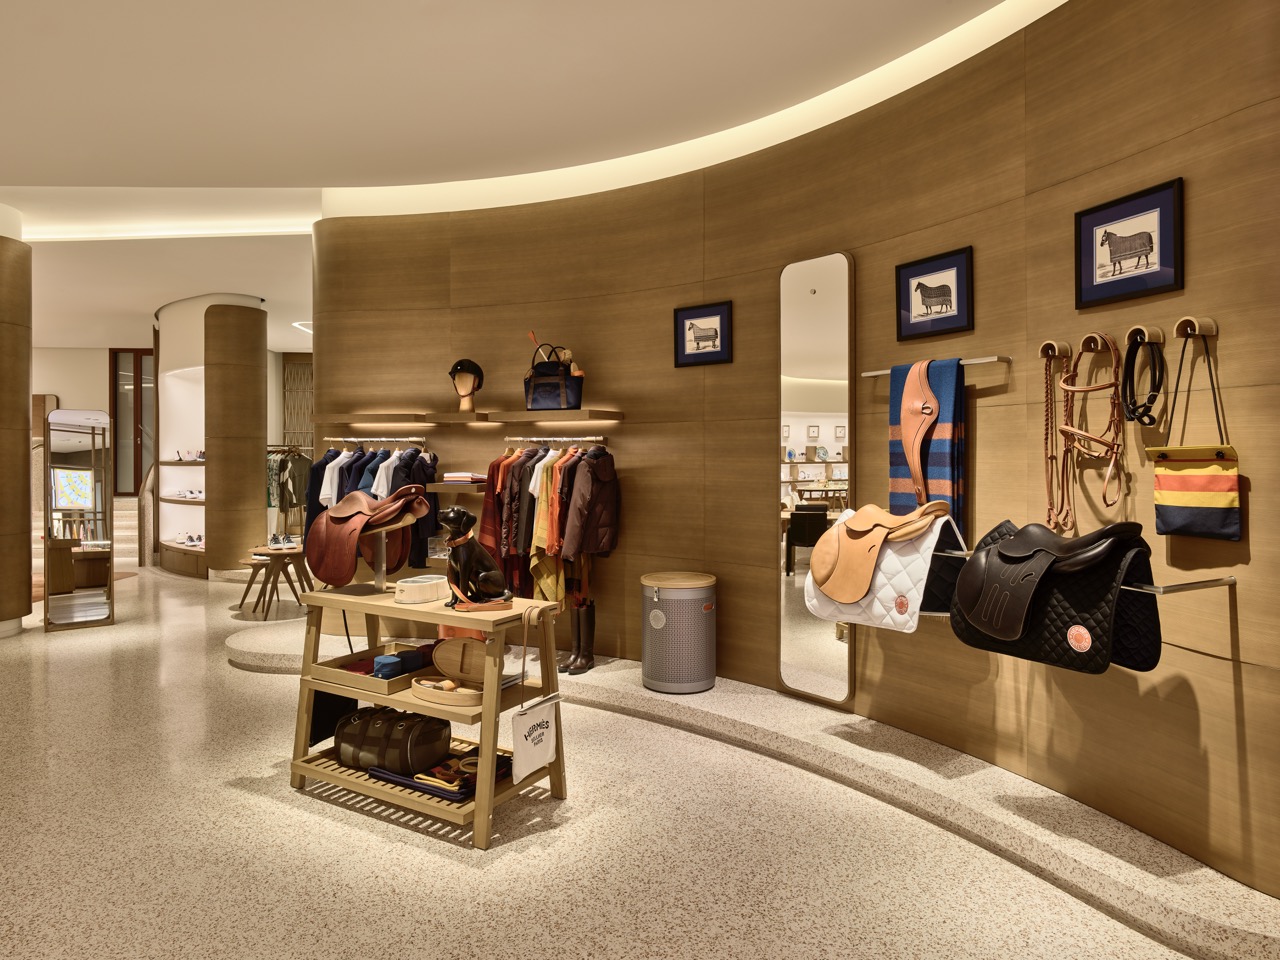 Visit the New Hermès Boutique – South Coast Plaza